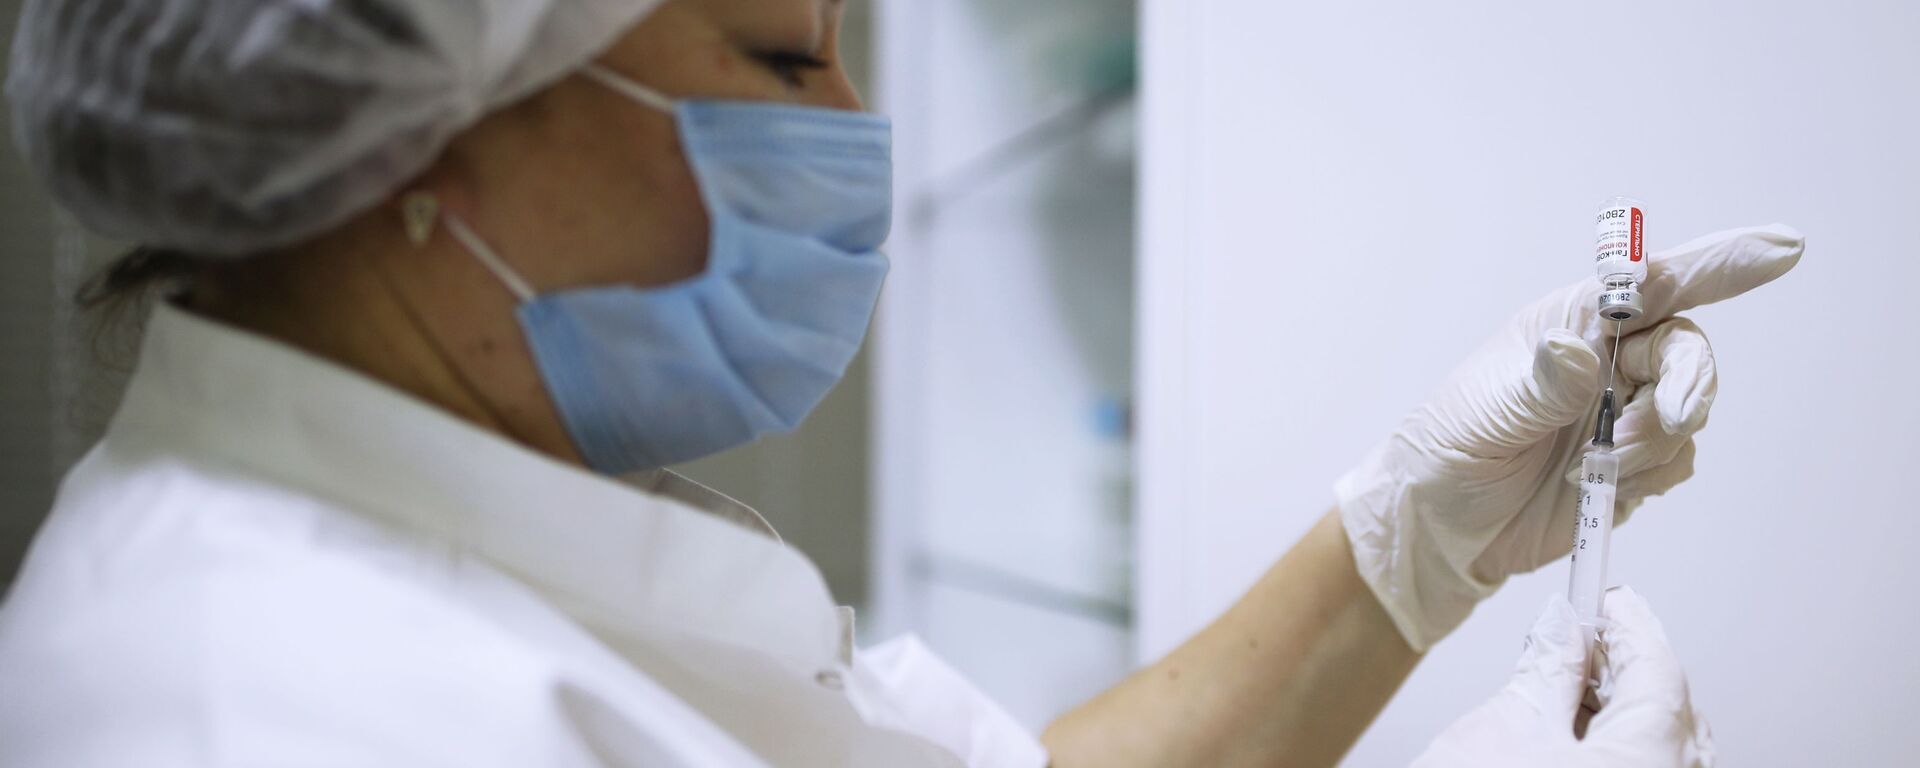 Медицинский работник набирает в шприц вакцину от COVID-19 - Sputnik Ўзбекистон, 1920, 01.03.2021